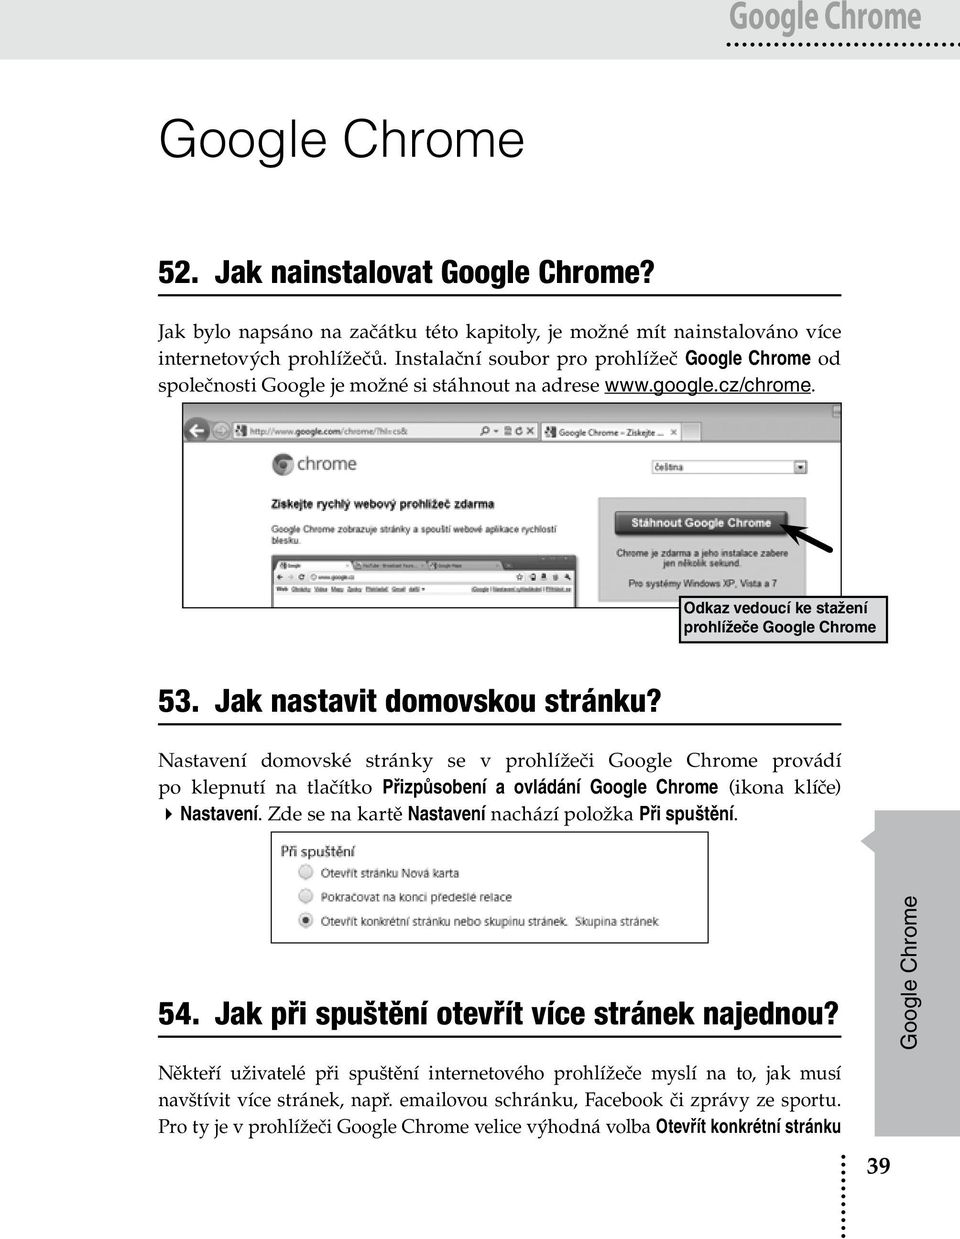 Jak nastavit domovskou stránku? Nastavení domovské stránky se v prohlížeči Google Chrome provádí po klepnutí na tlačítko Přizpůsobení a ovládání Google Chrome (ikona klíče) Nastavení.